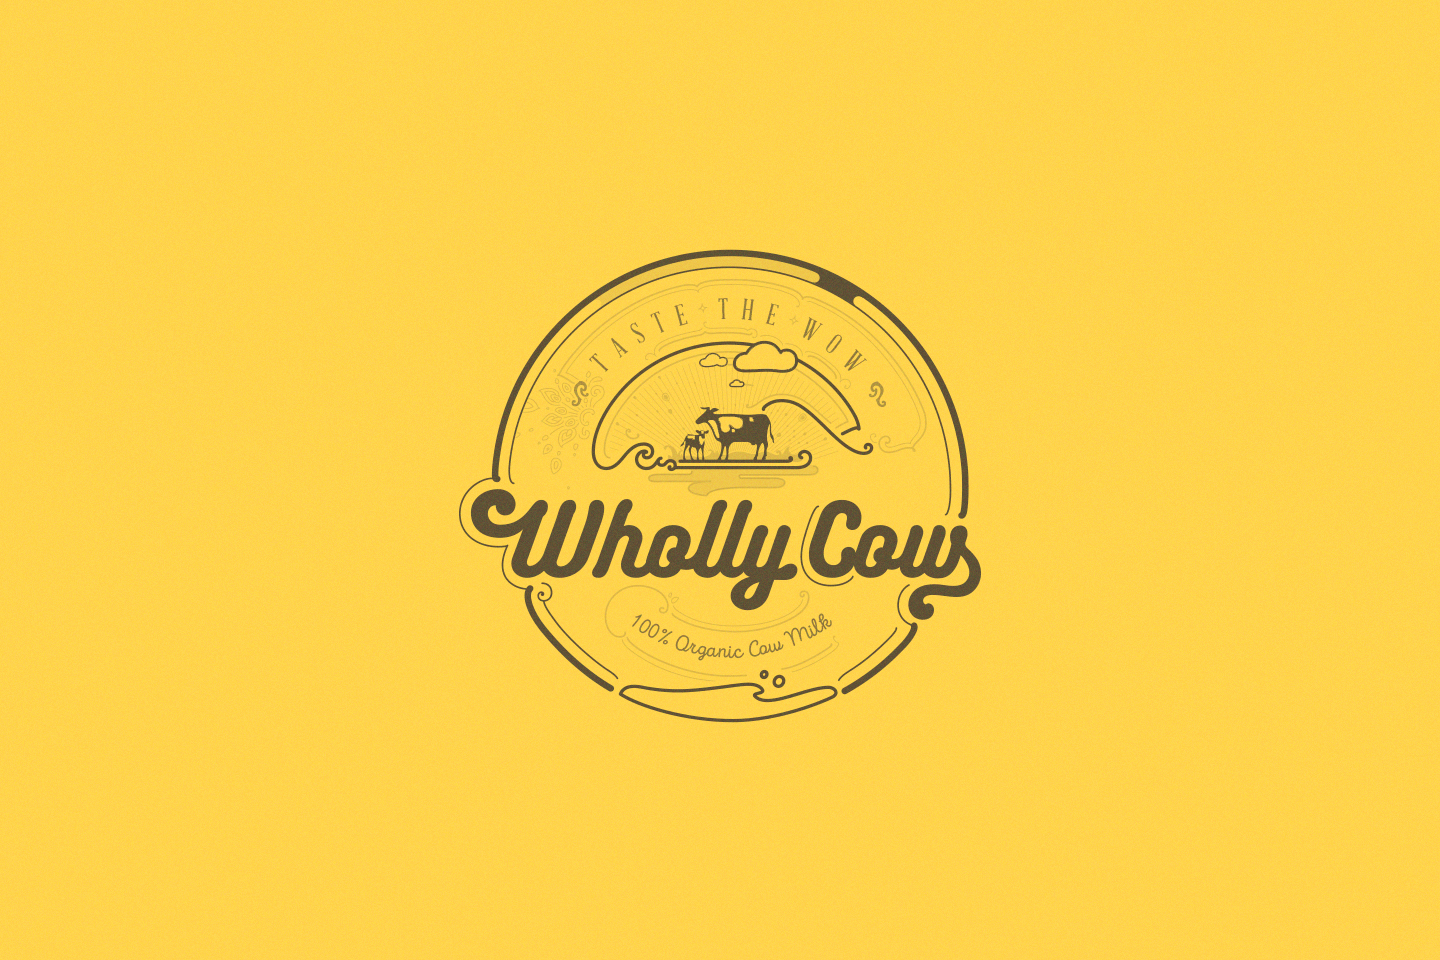 whollycow logo yellow